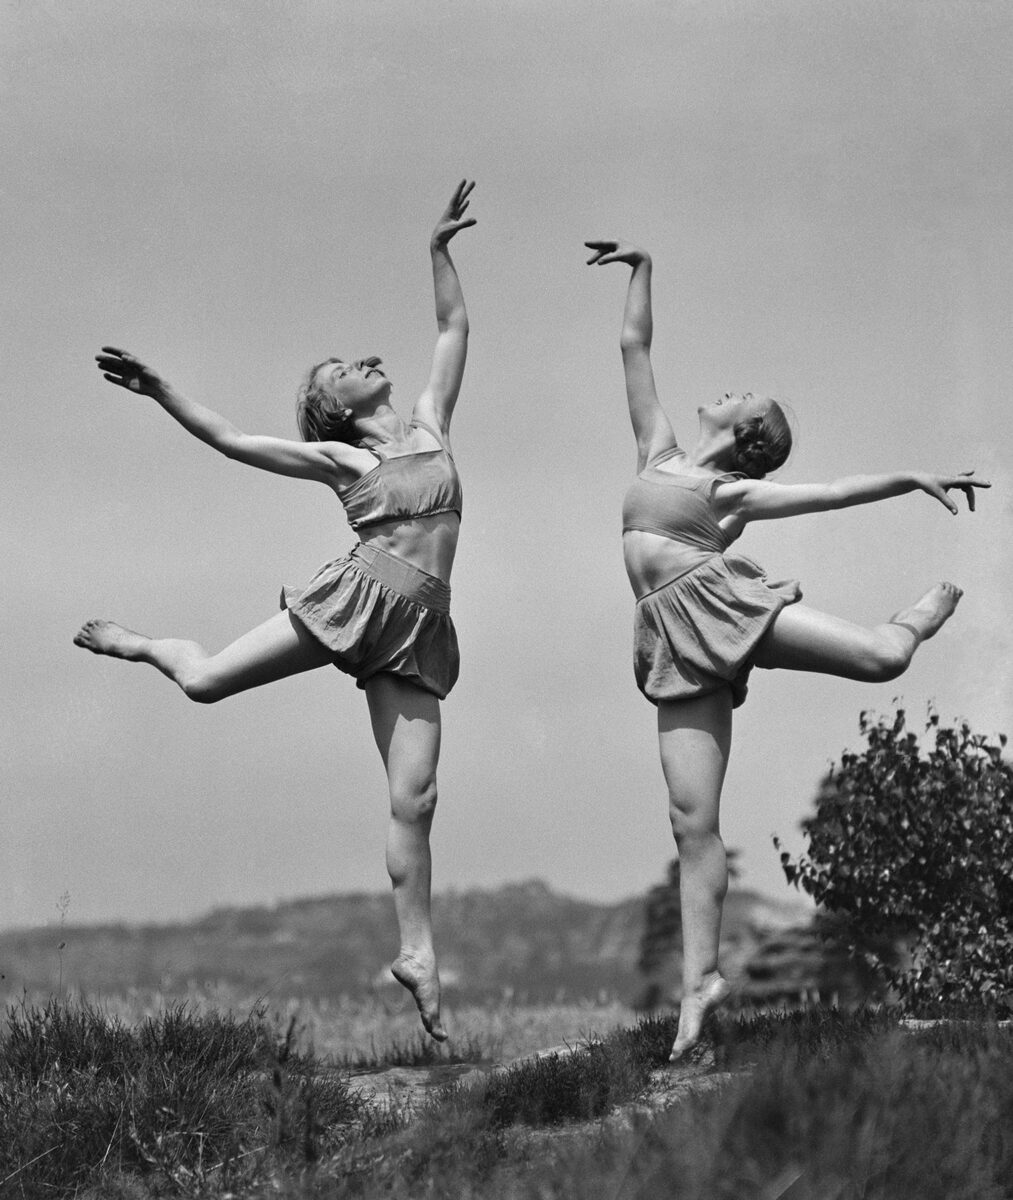 Έλλη Σουγιουλτζόγλου-Σεραϊδάρη (Nelly’s). Χορεύτριες της Σχολής Mary Wigman στη Σαξονική Ελβετία, 1922-23. © Μουσείο Μπενάκη/Φωτογραφικά Αρχεία.